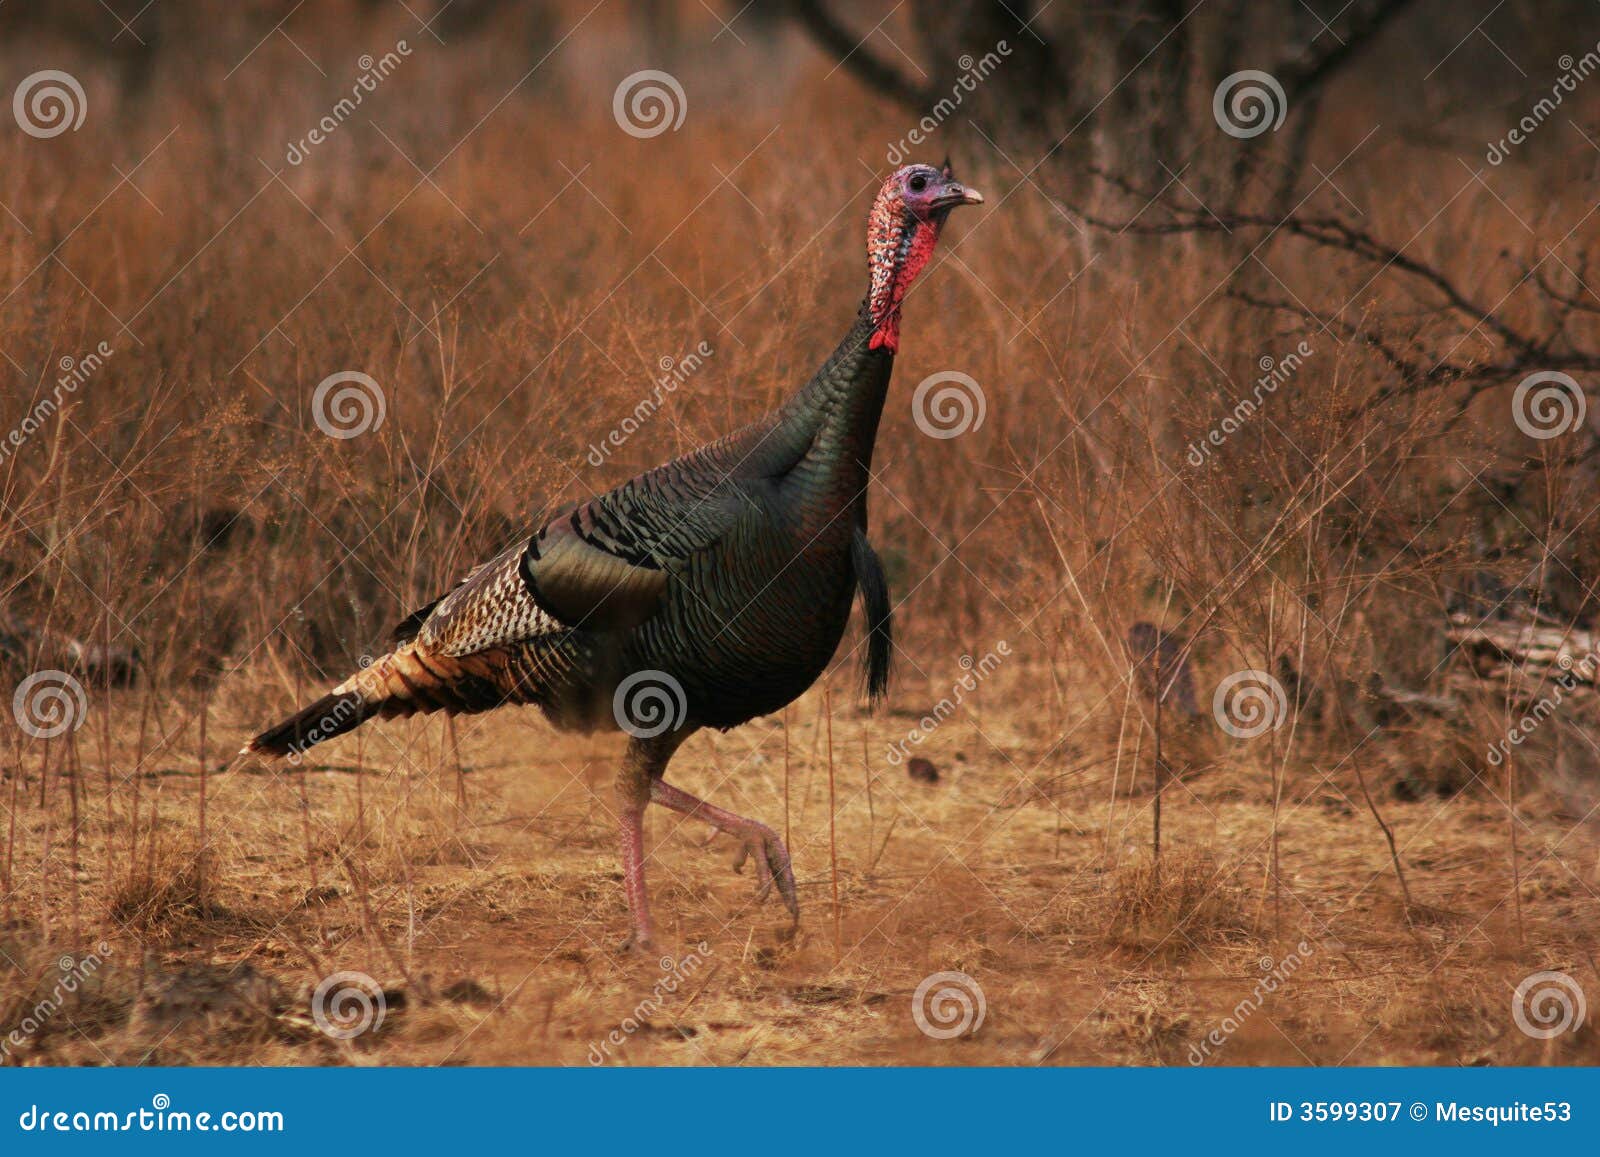 wild turkey gobbler